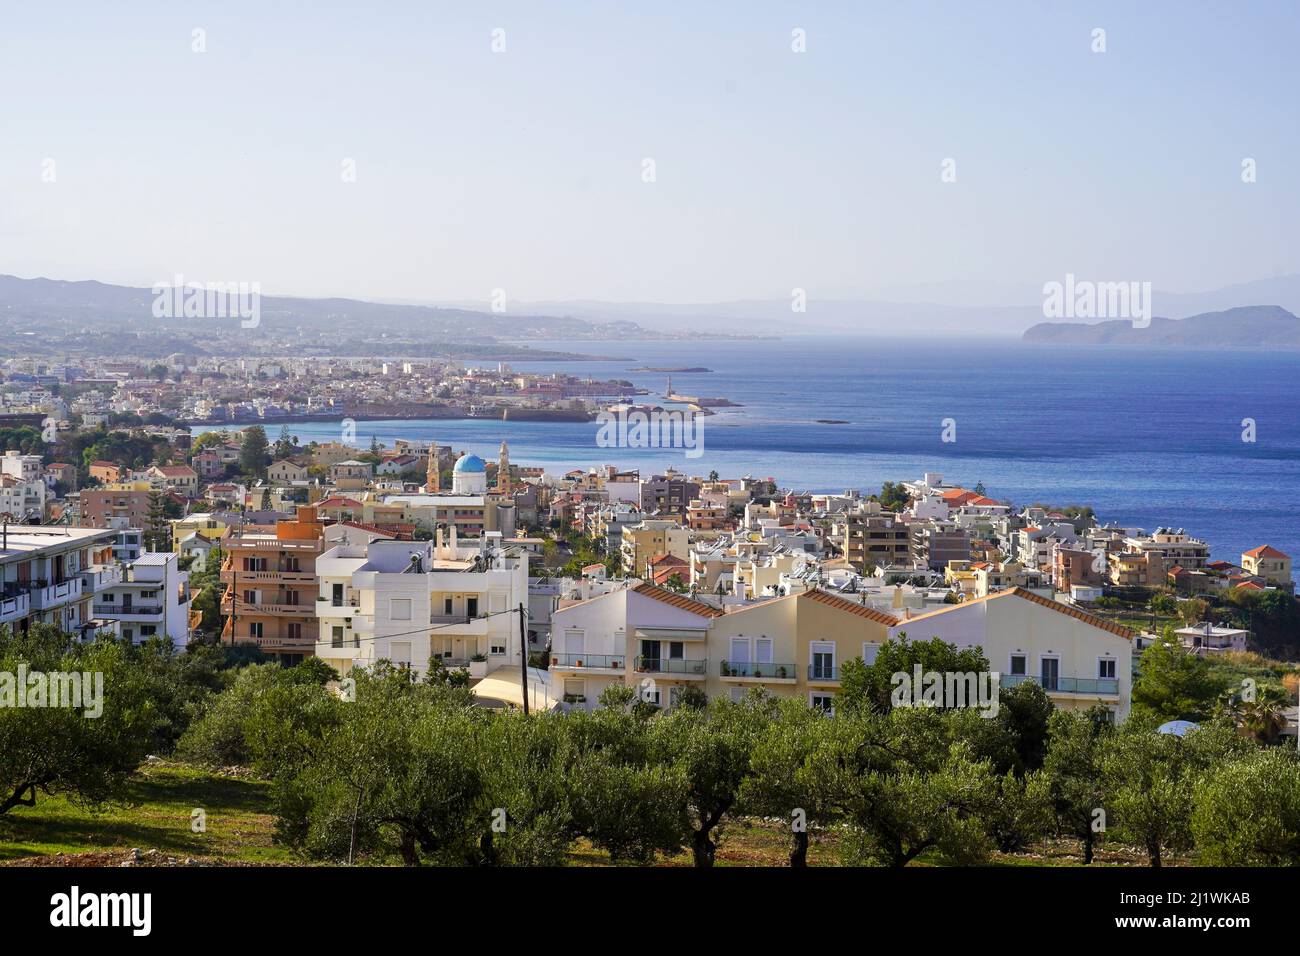 Cityscape of Chania, Crete, Greece Stock Photo